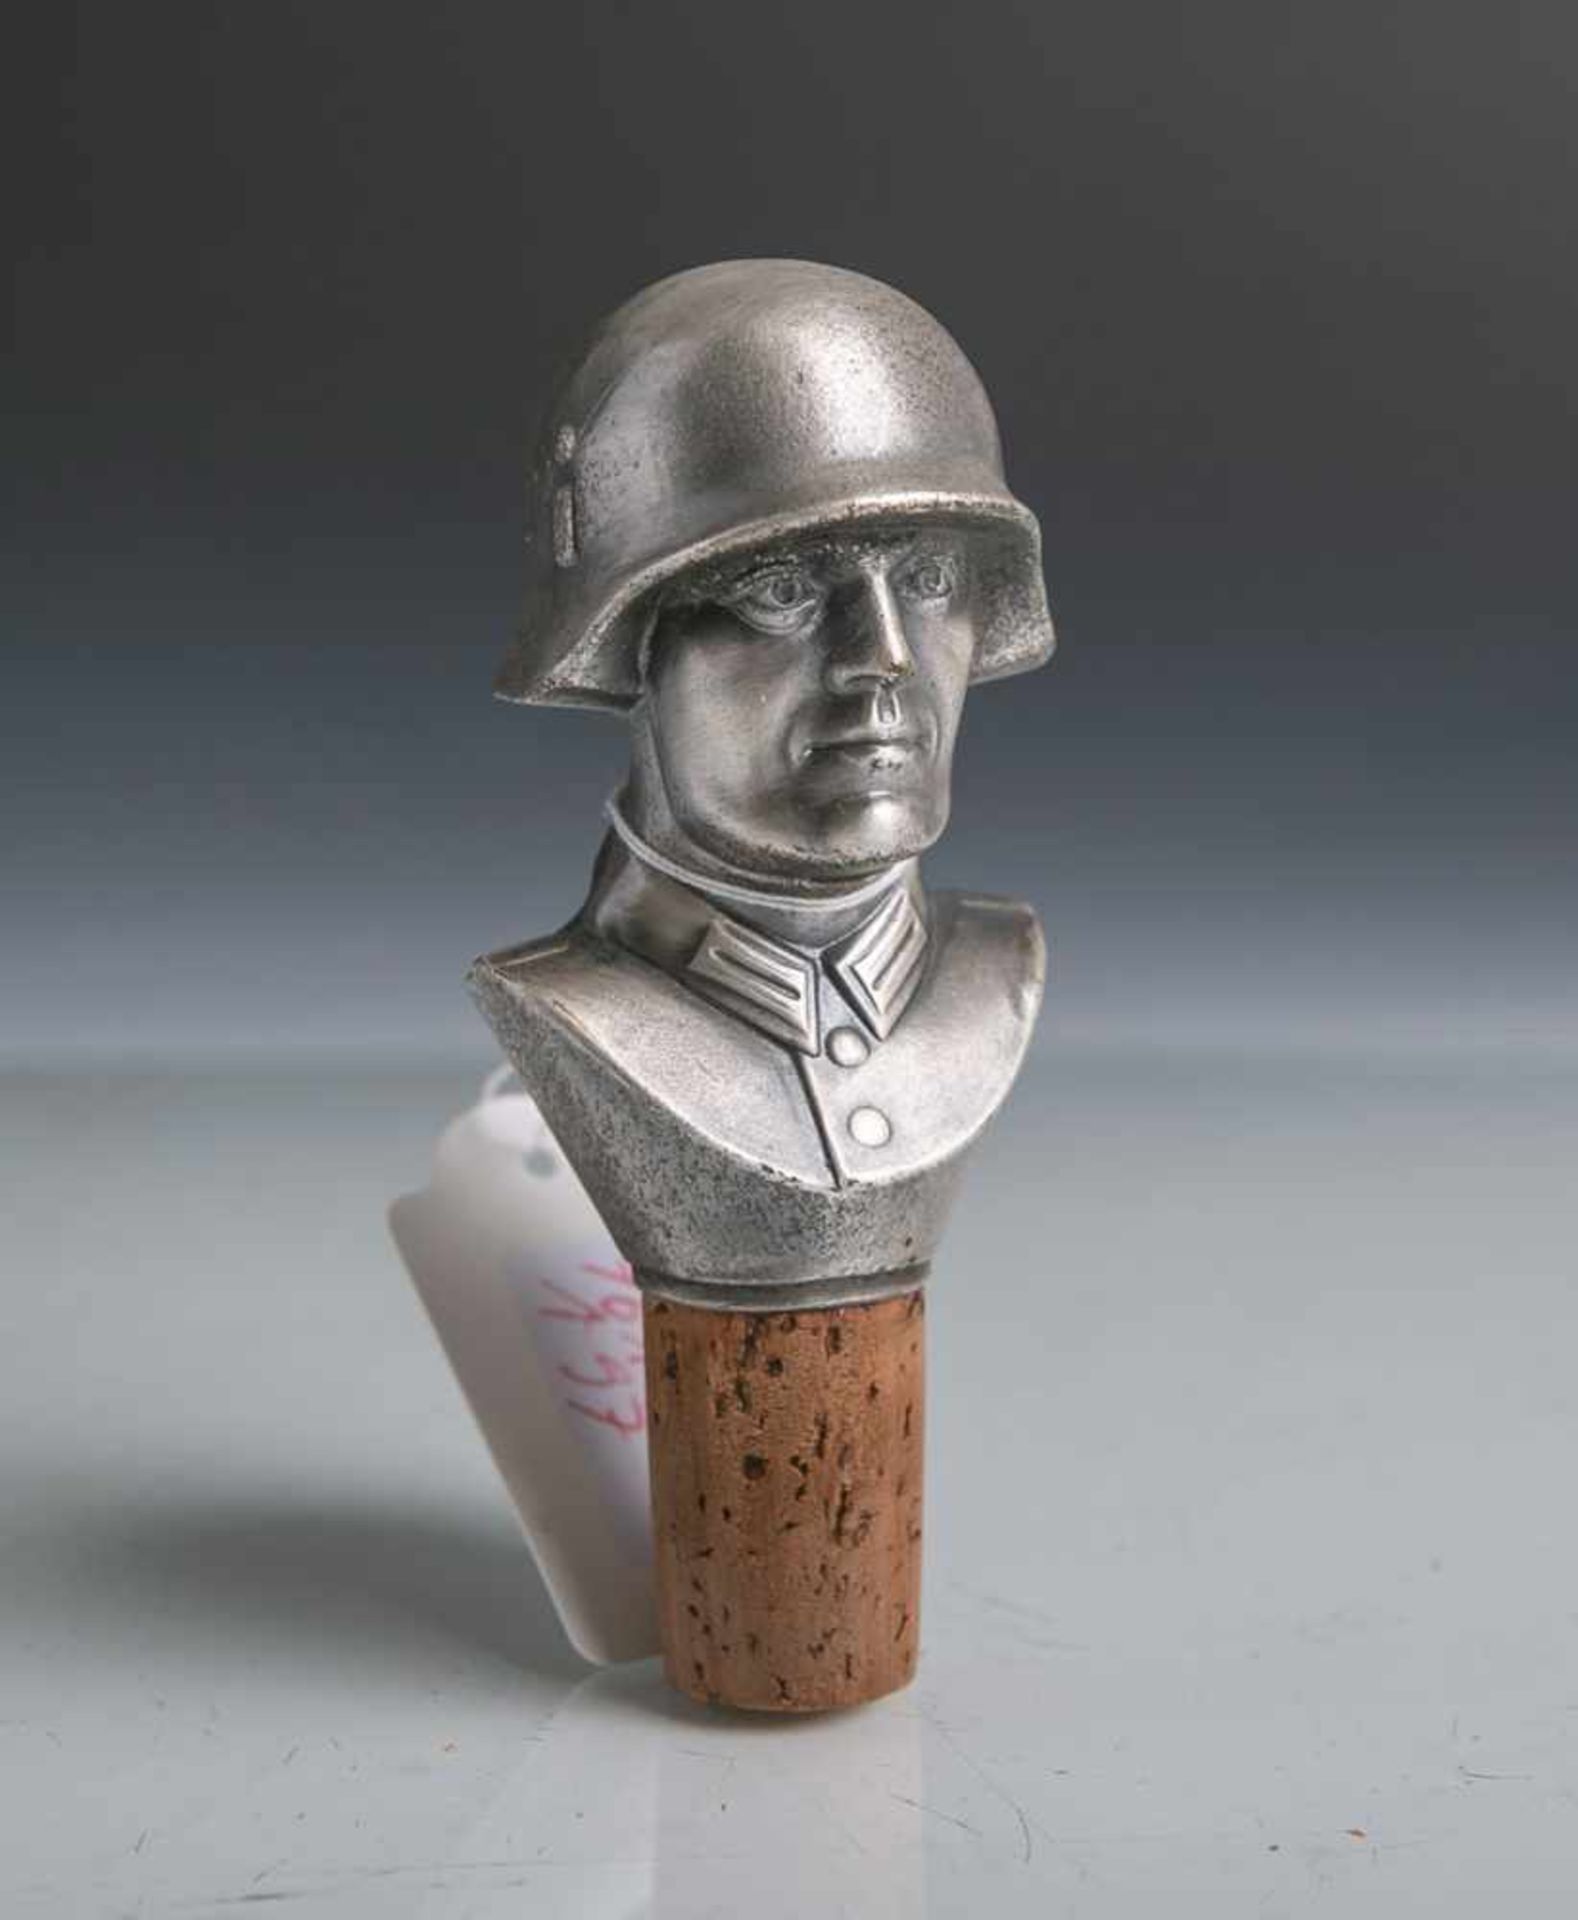 Flaschenverschluss mit der Büste eines Soldaten der Wehrmacht (Drittes Reich), aus Metall,<